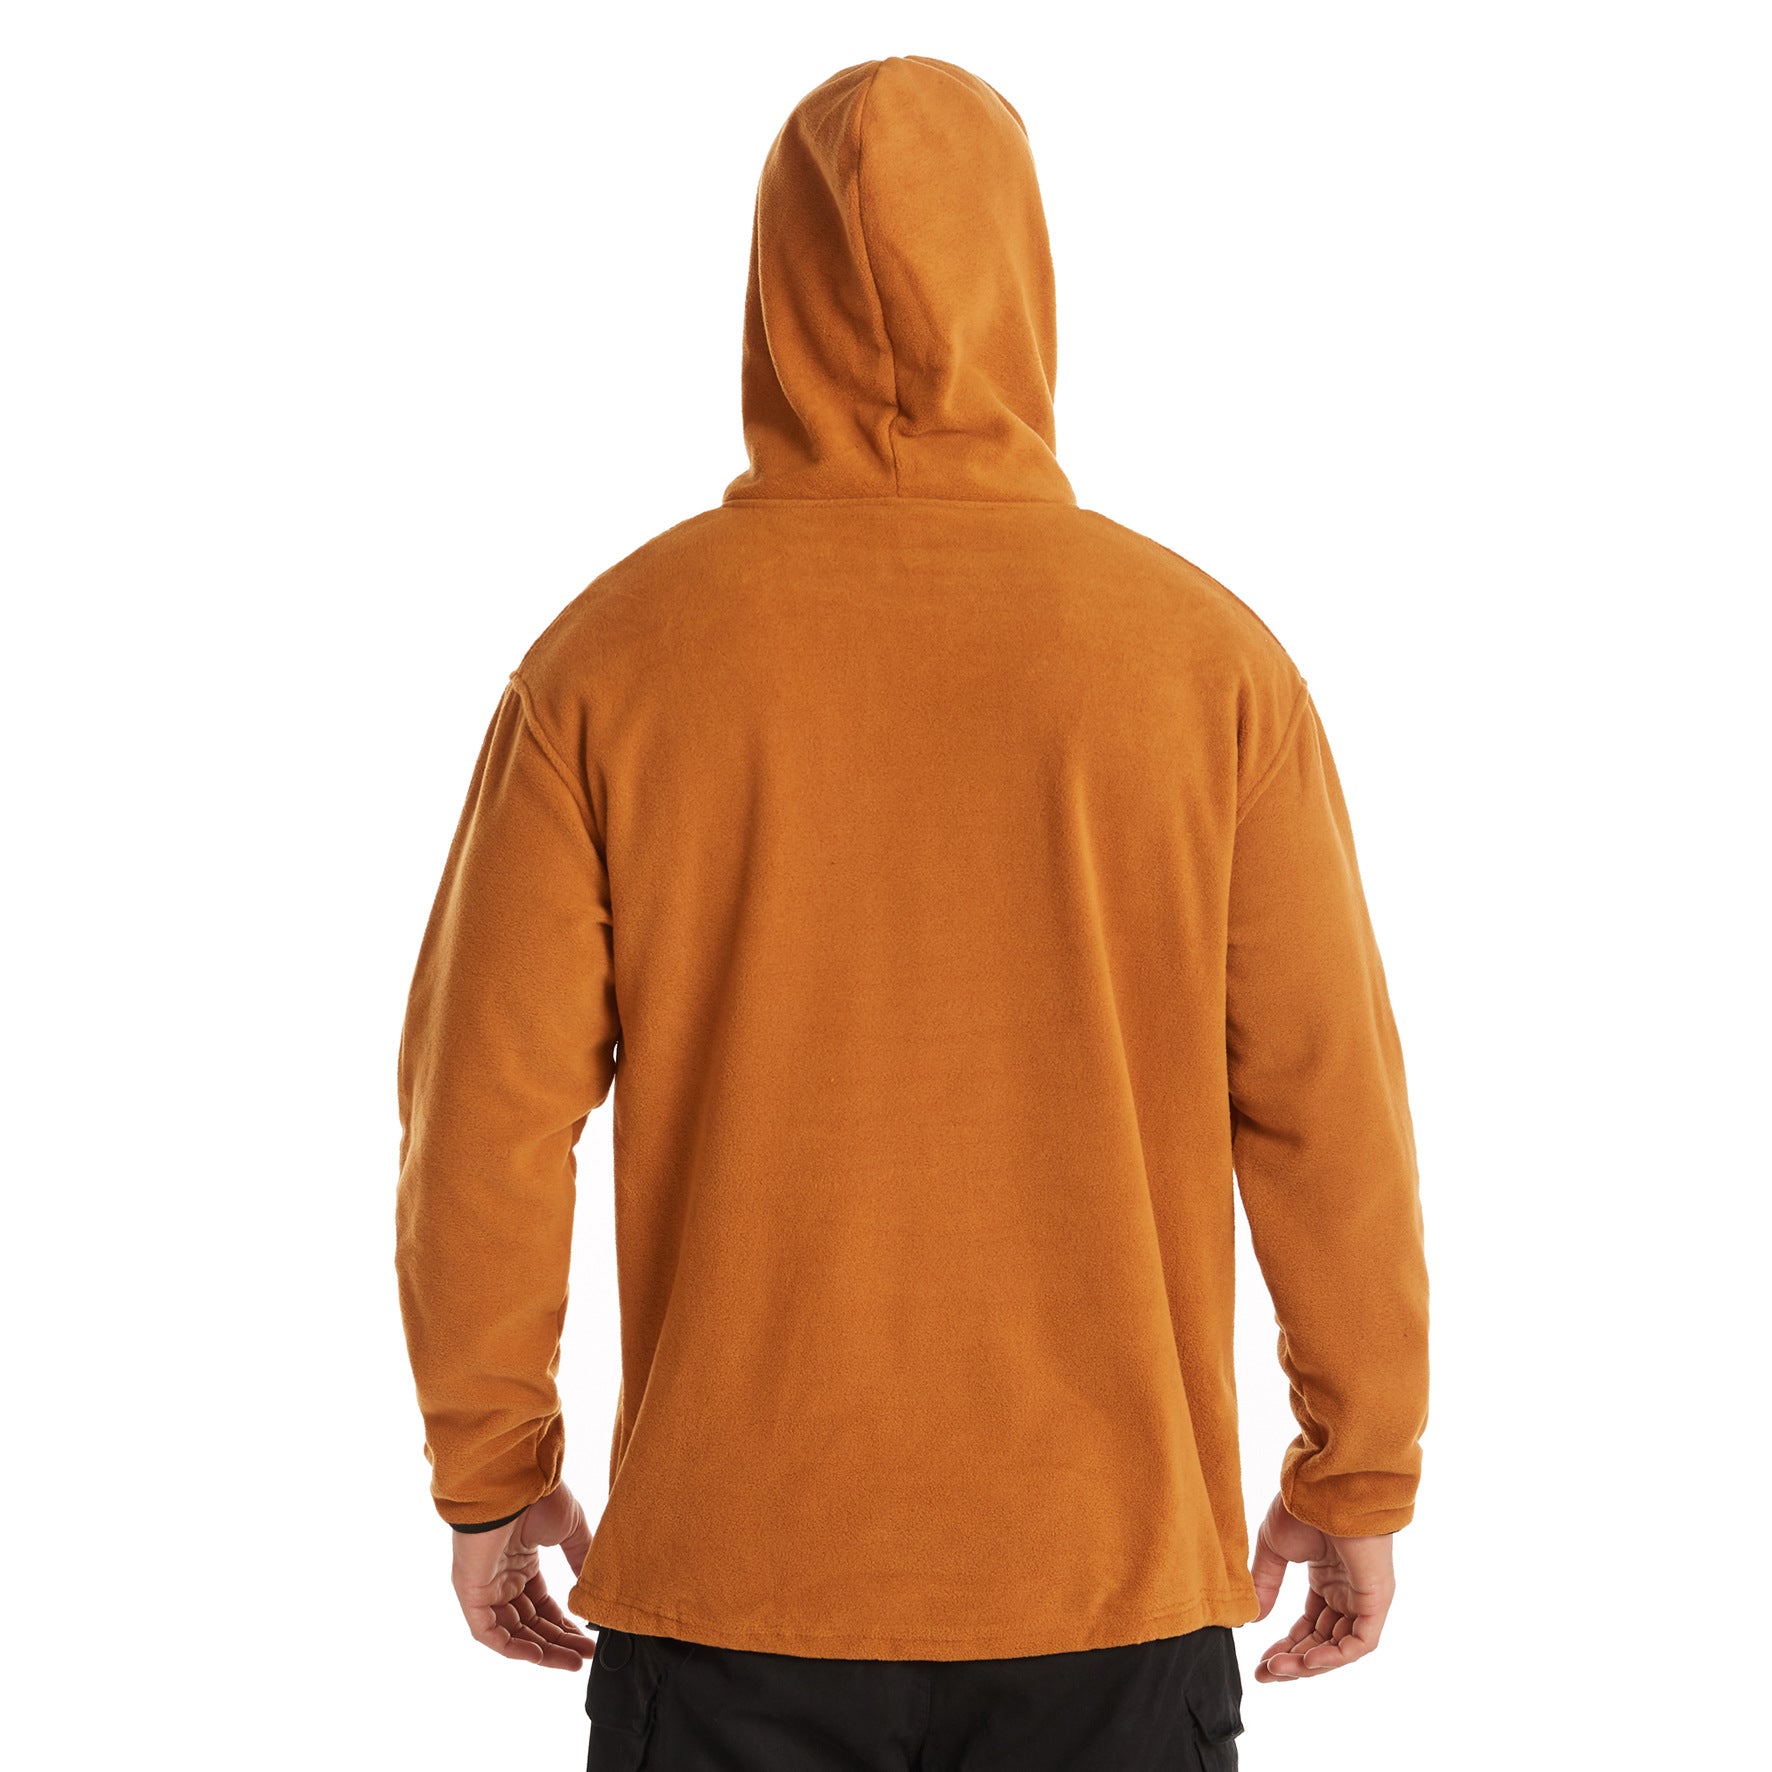 Men's Outdoor Fleece Solid Color Sweaters